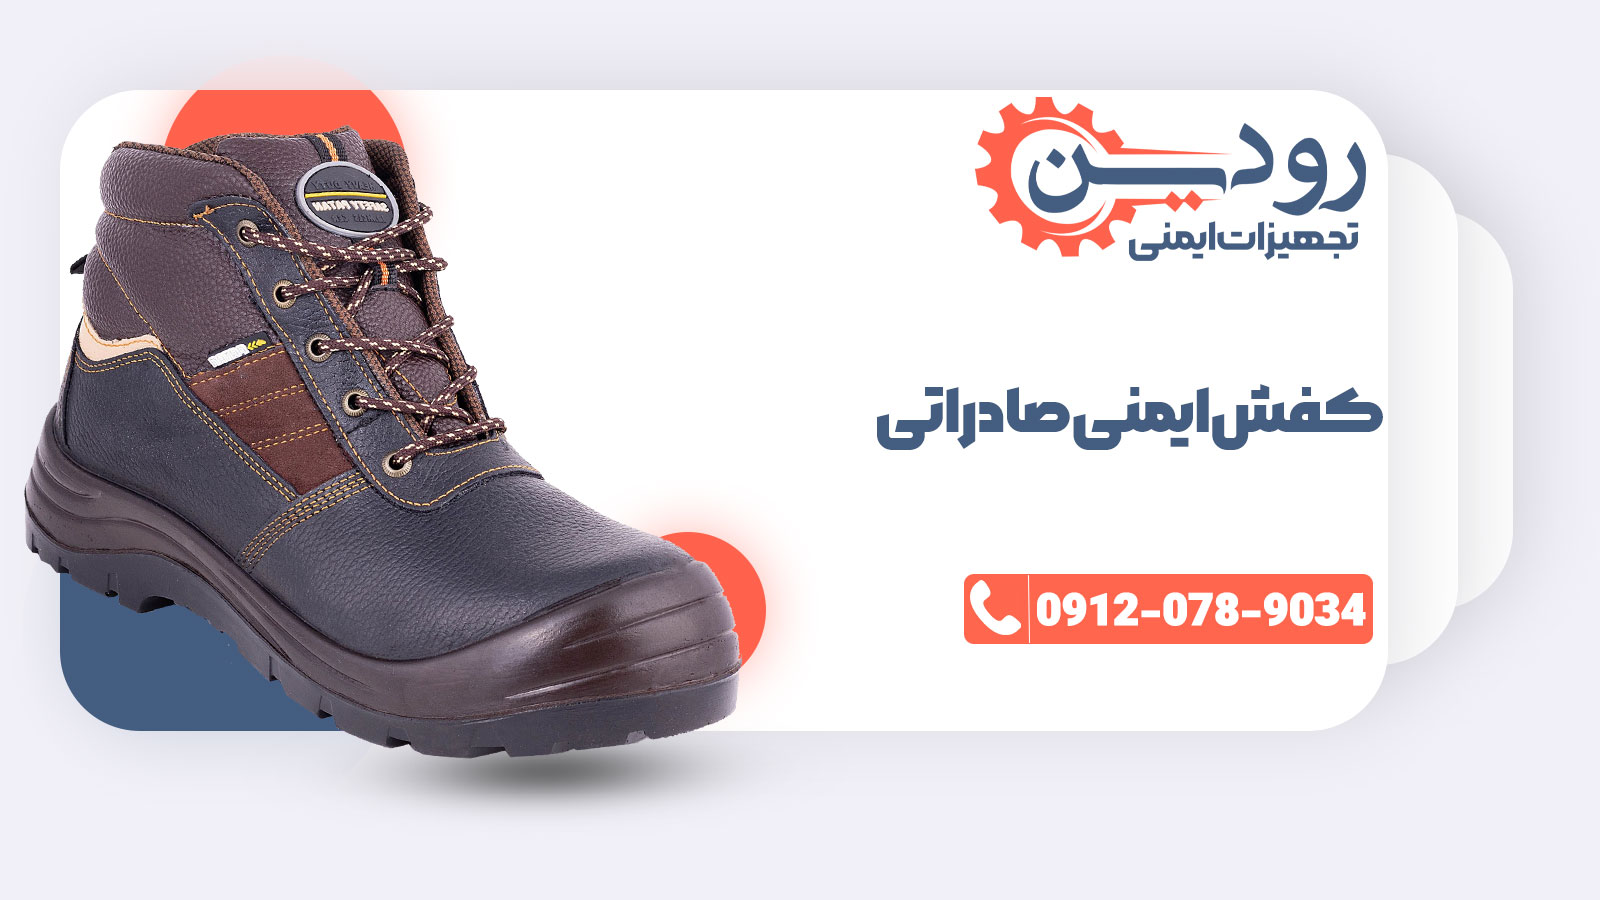 کارخانجات تولیدی و فروش کفش ایمنی صادراتی در کشور ایران در حال رشد هستند.